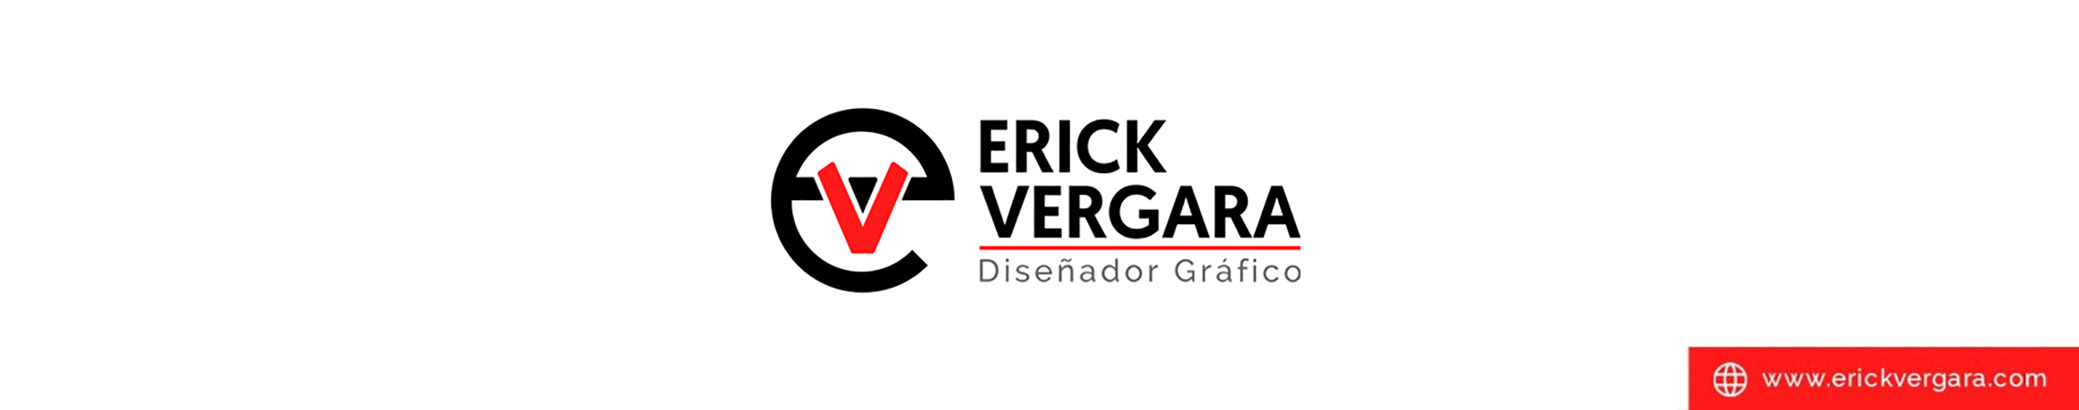 Erick Vergara のプロファイルバナー